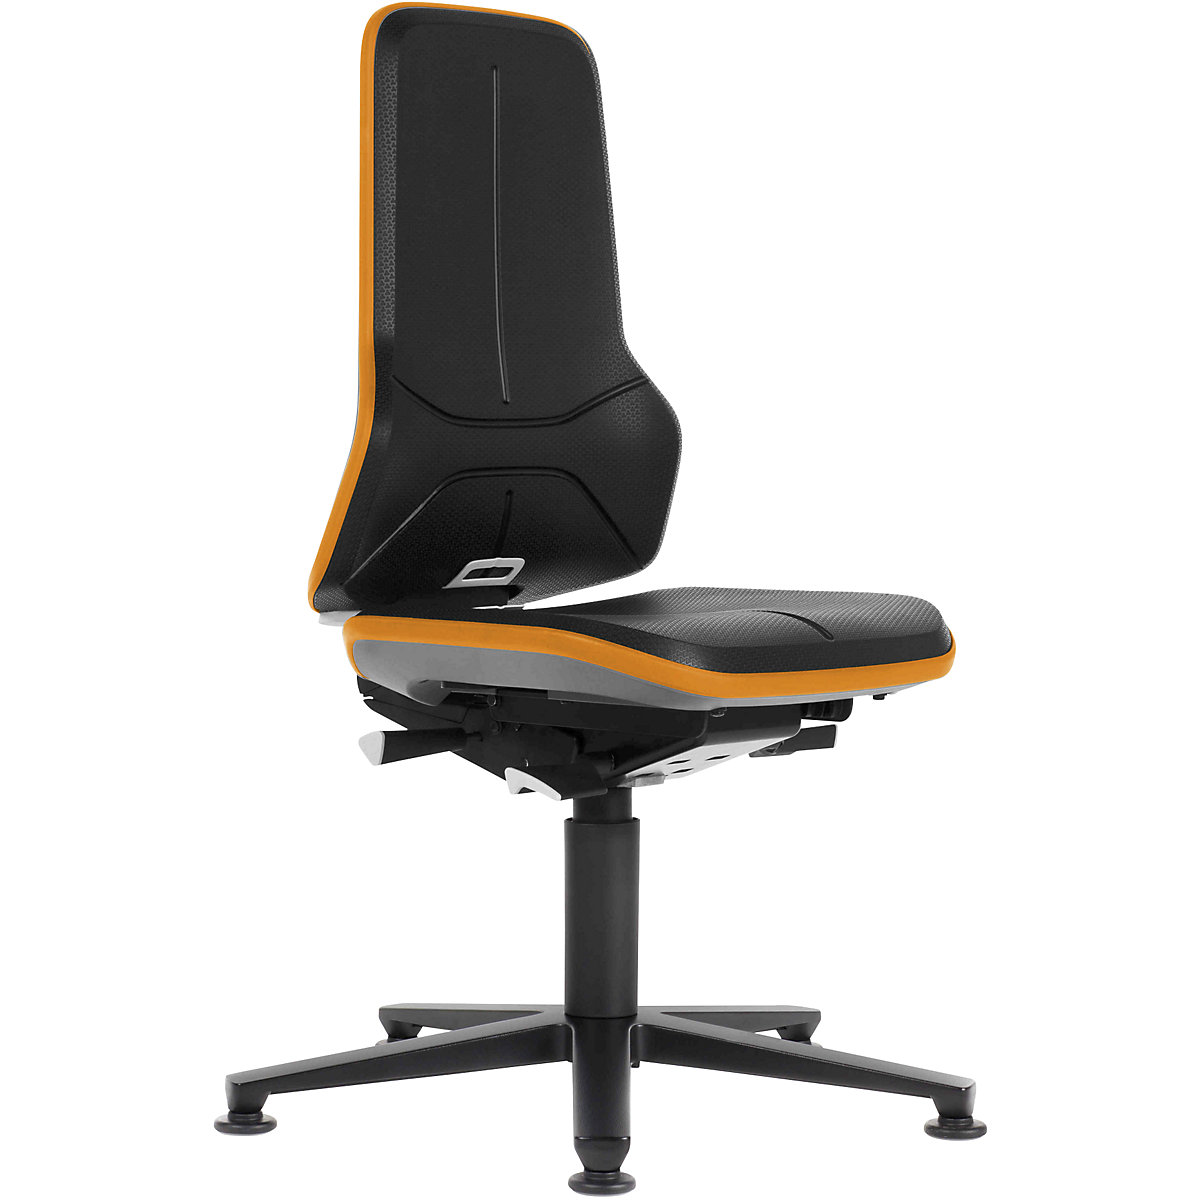 Pracovní otočná židle NEON, patky – bimos, permanentní kontakt, PU lehčená hmota, oranžový flexibilní pás-10